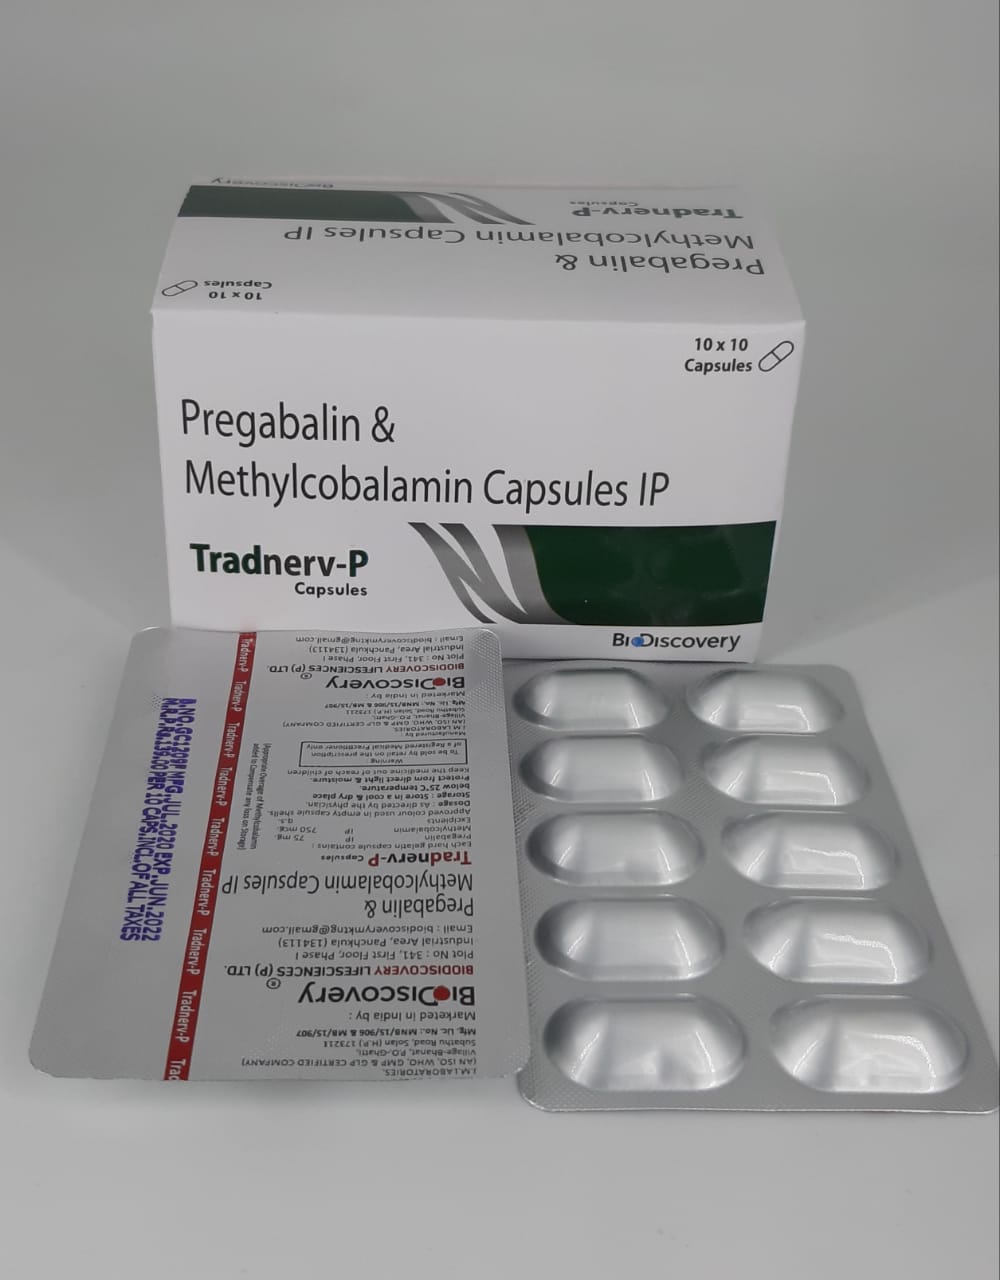 Product Name: Tradnerv P, Compositions of Pregabalin & Methylcobalamin Capsules IP are Pregabalin & Methylcobalamin Capsules IP - Biodiscovery Lifesciences Pvt Ltd